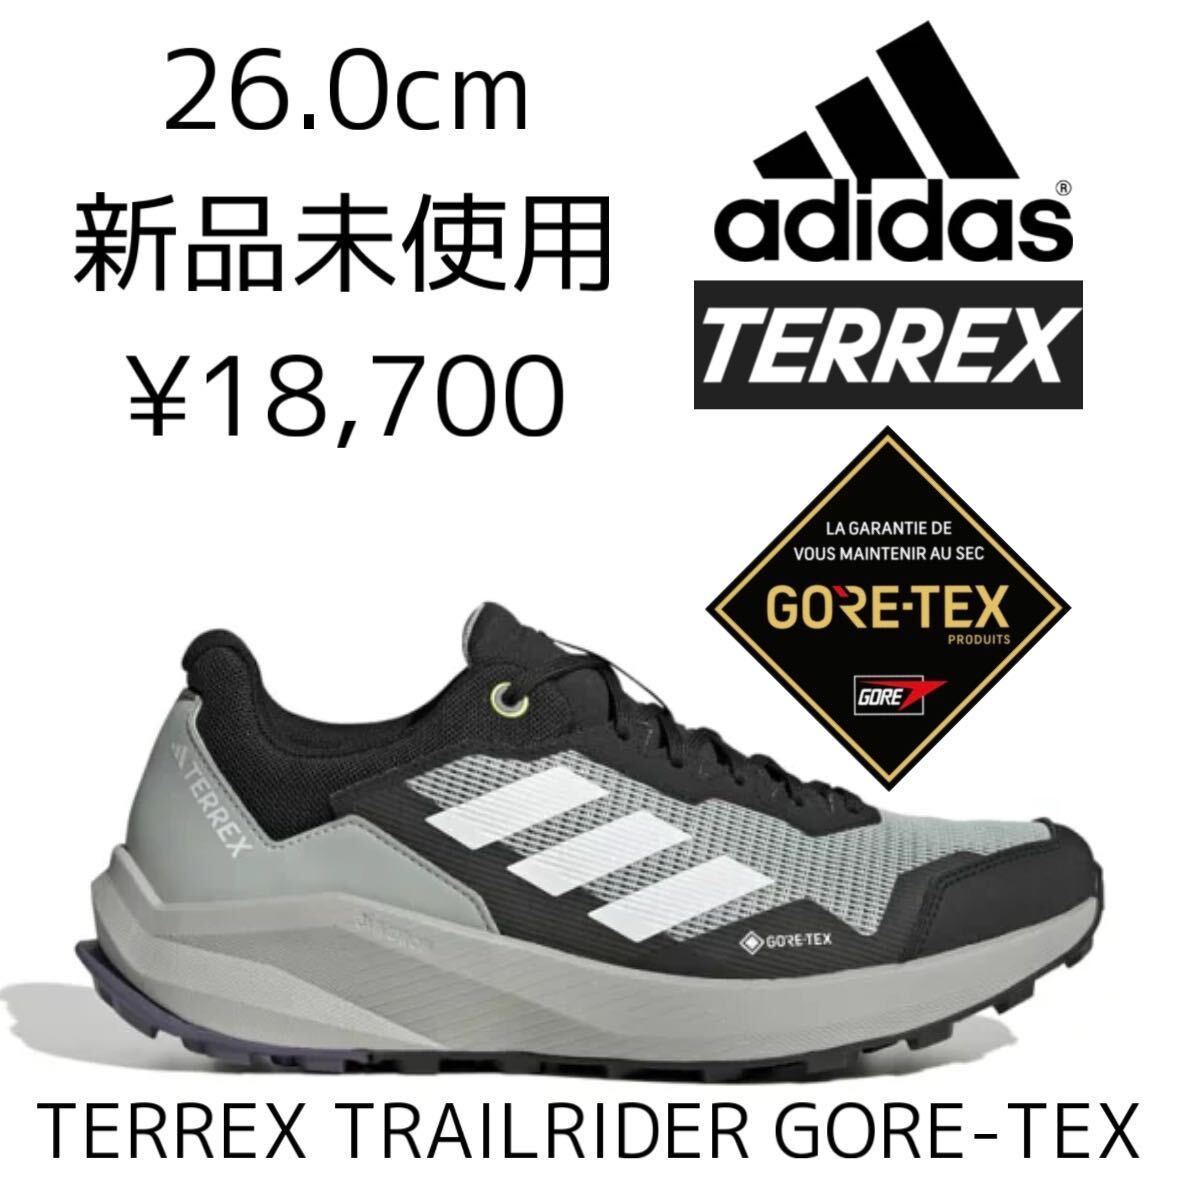 GORE-TEX! 26.0cm 新品 adidas TERREX TRAILRIDER GTX トレイルランニング トレッキングシューズ トレラン 防水 テレックス ゴアテックスの画像1